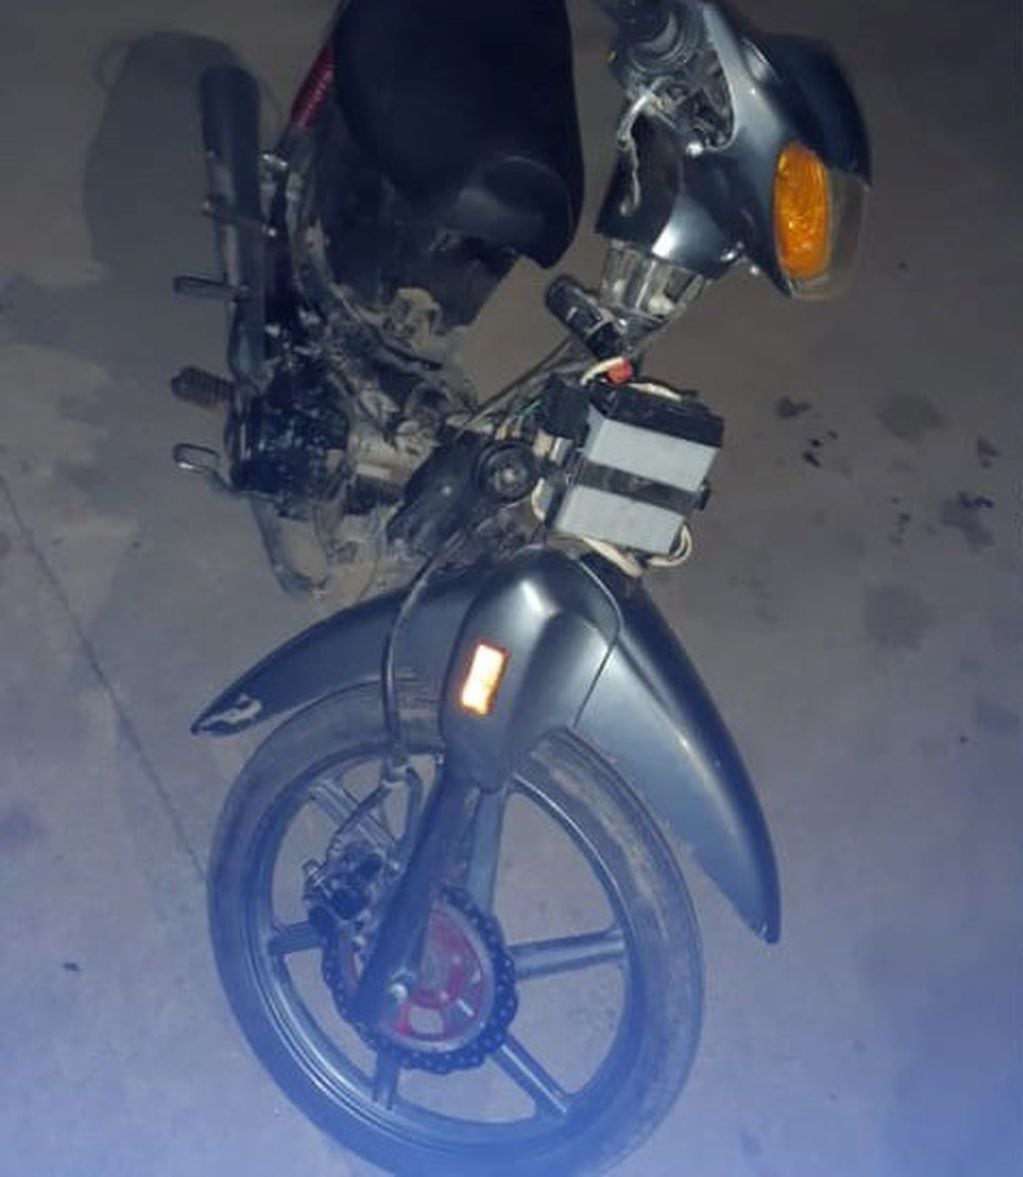 Moto recuperada por la policia de Arroyito